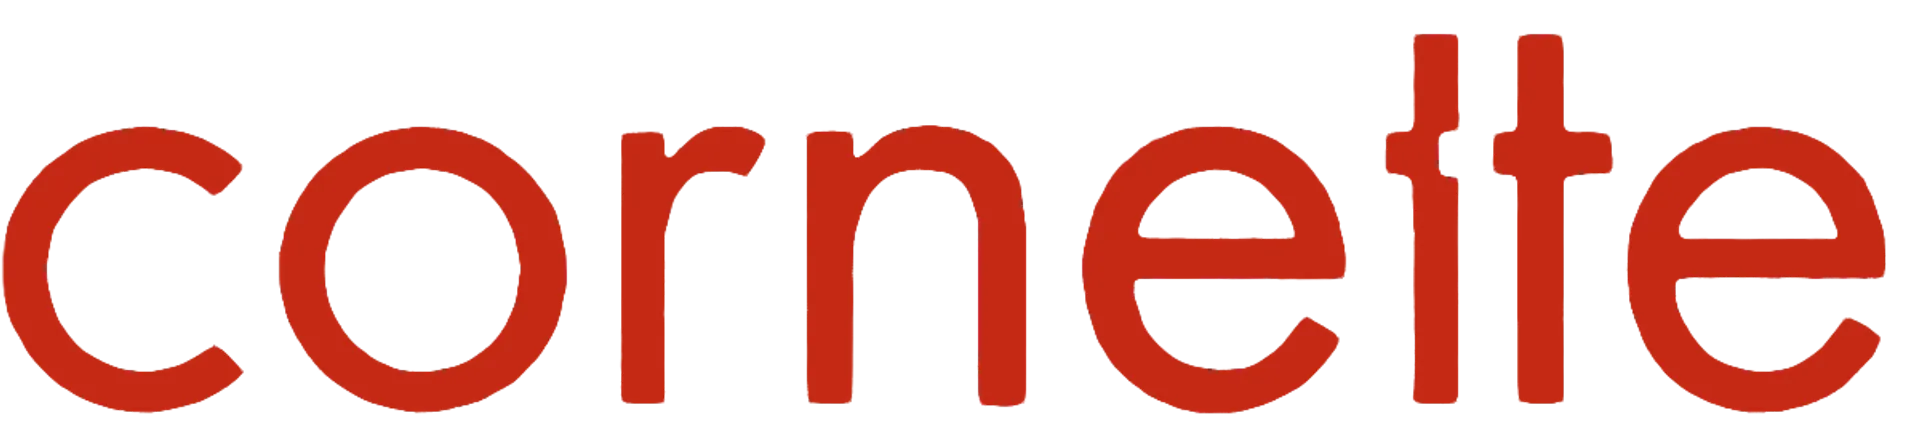 COMETTE logo